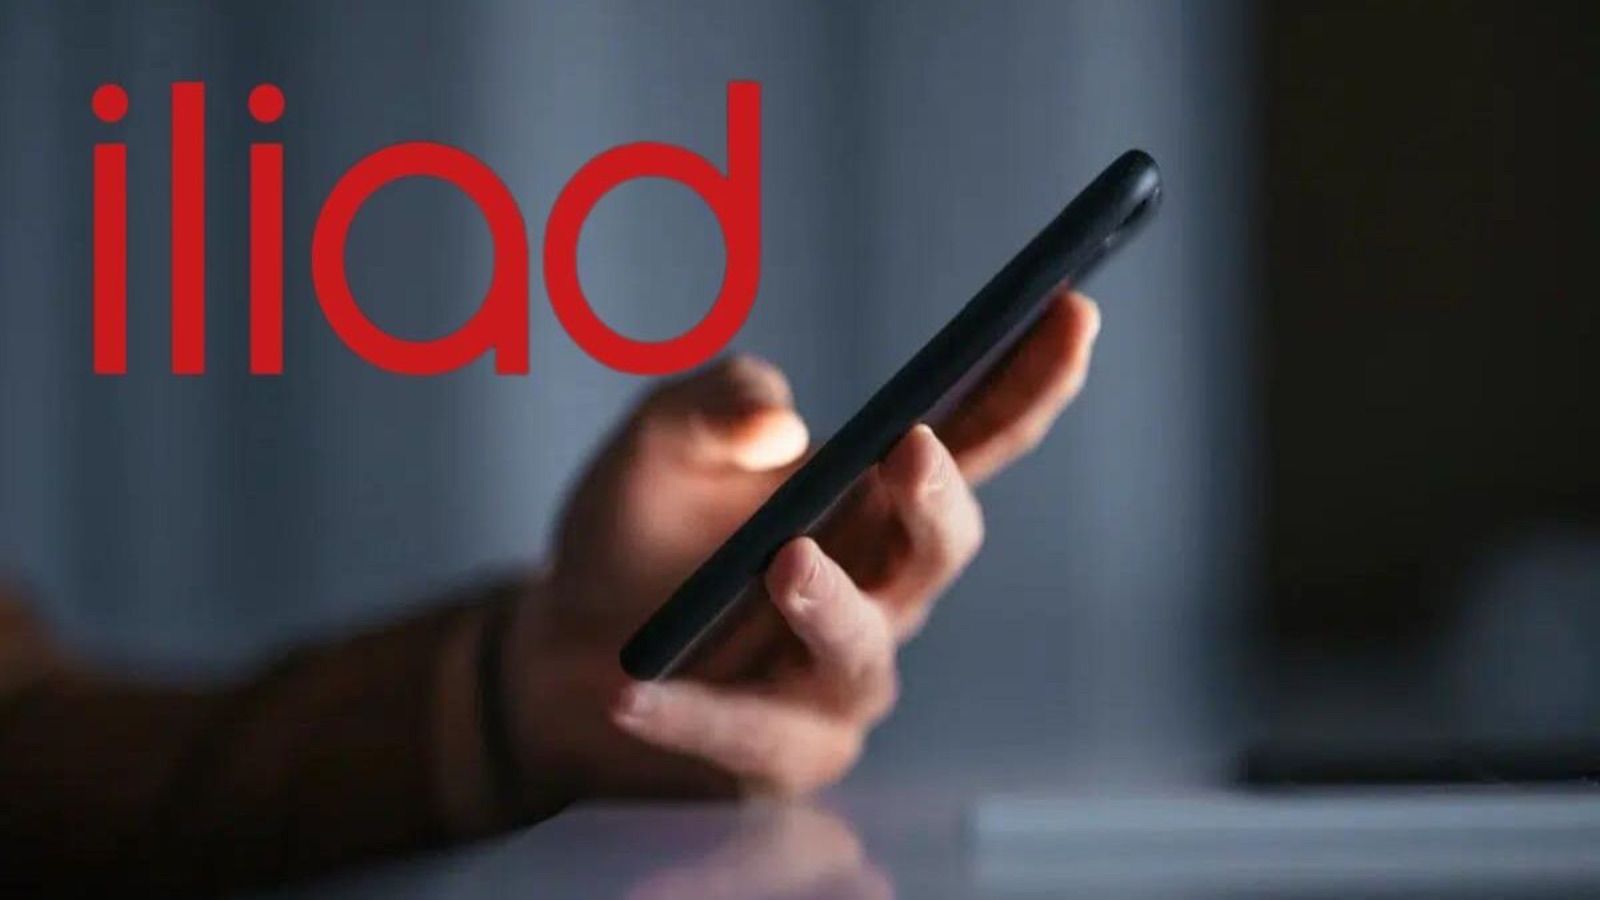 Iliad assurda, il servzio nuovo è GRATIS e distrugge Vodafone